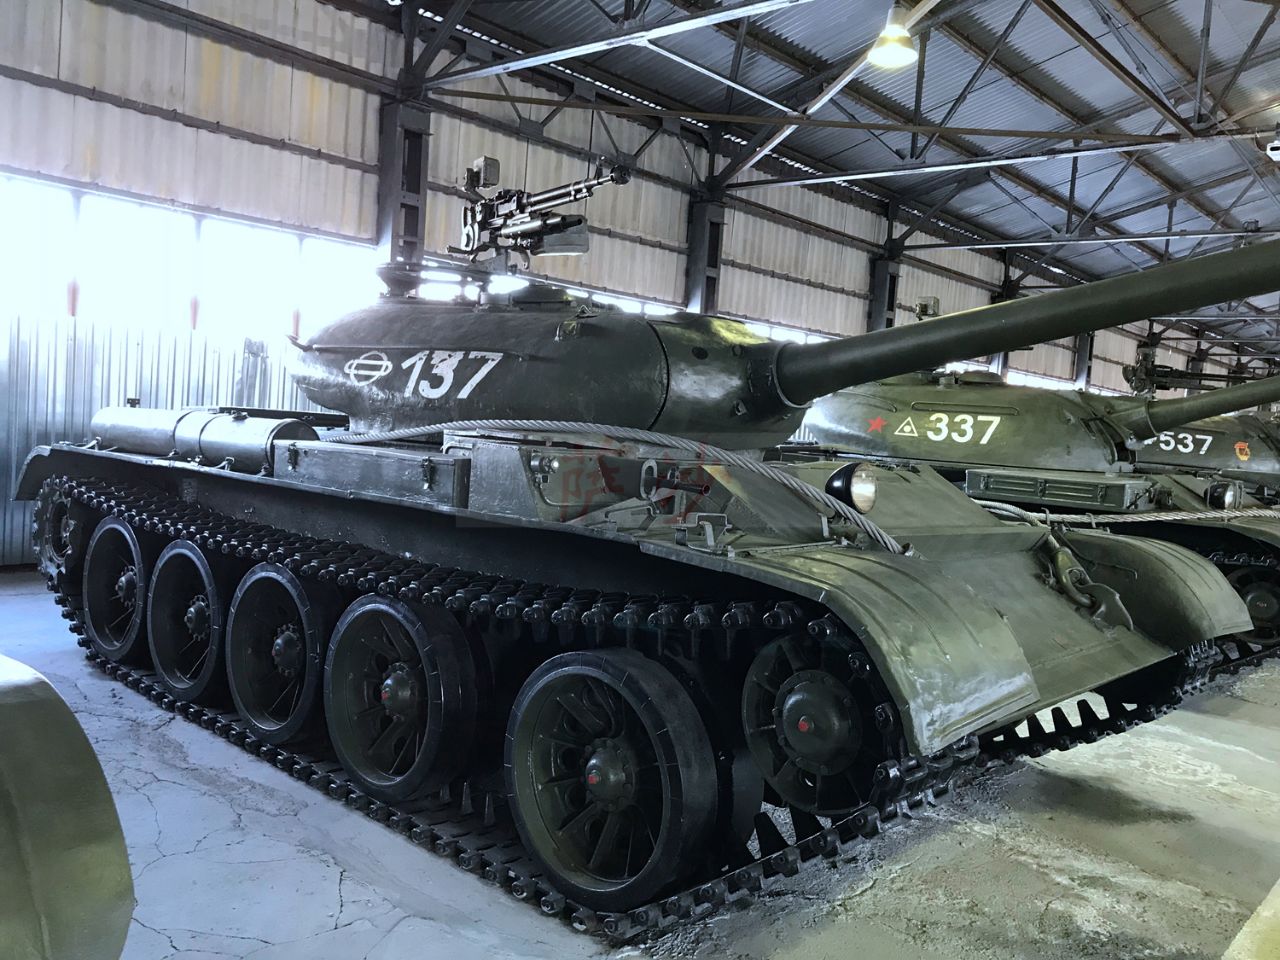 人类历史上制造数量最多的坦克苏联t54:萨沙的兵器图谱第156期